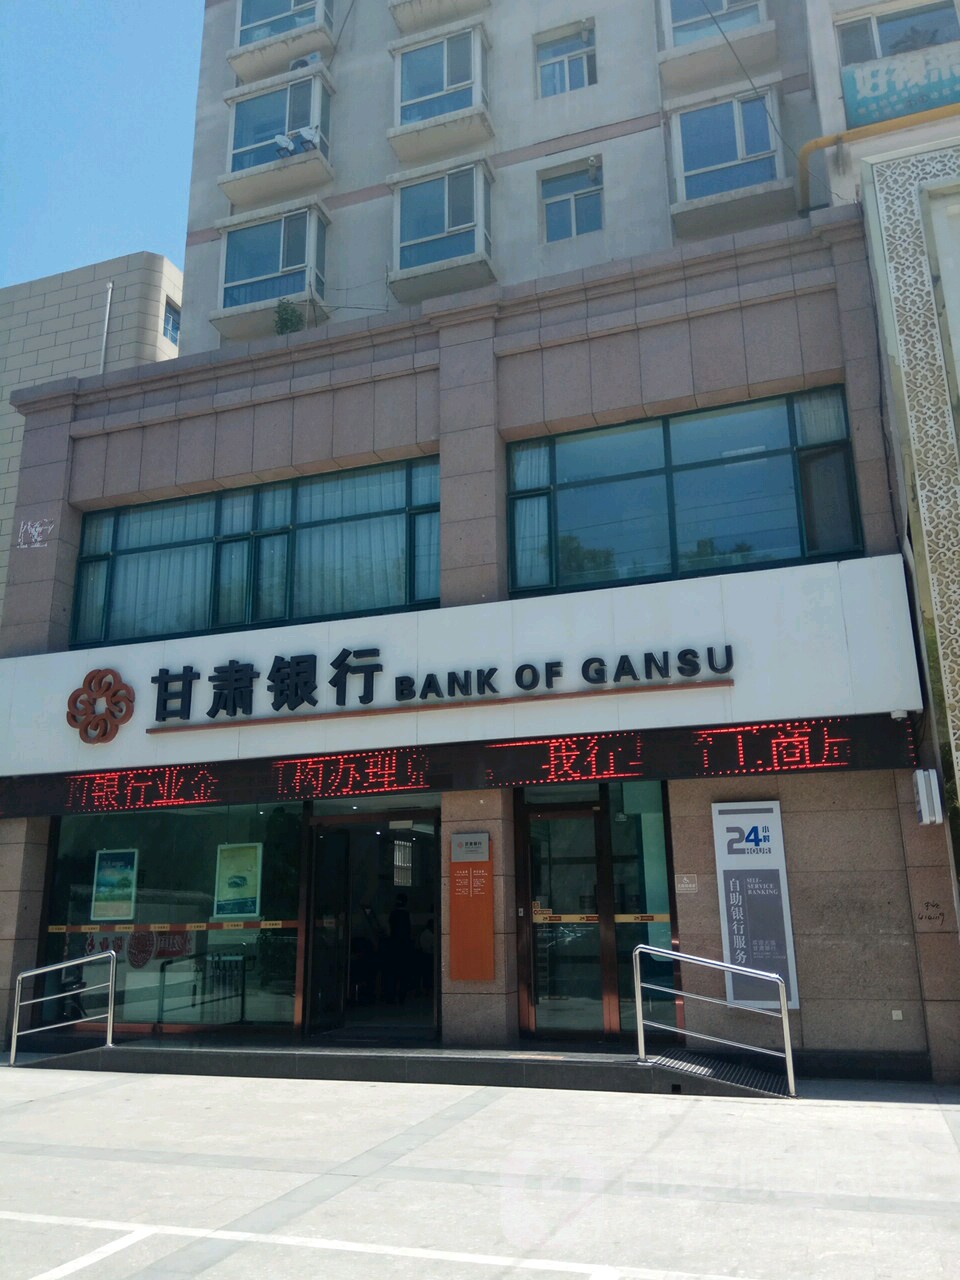 甘肅銀行24小時自助銀行(蘭州敦煌路支行)